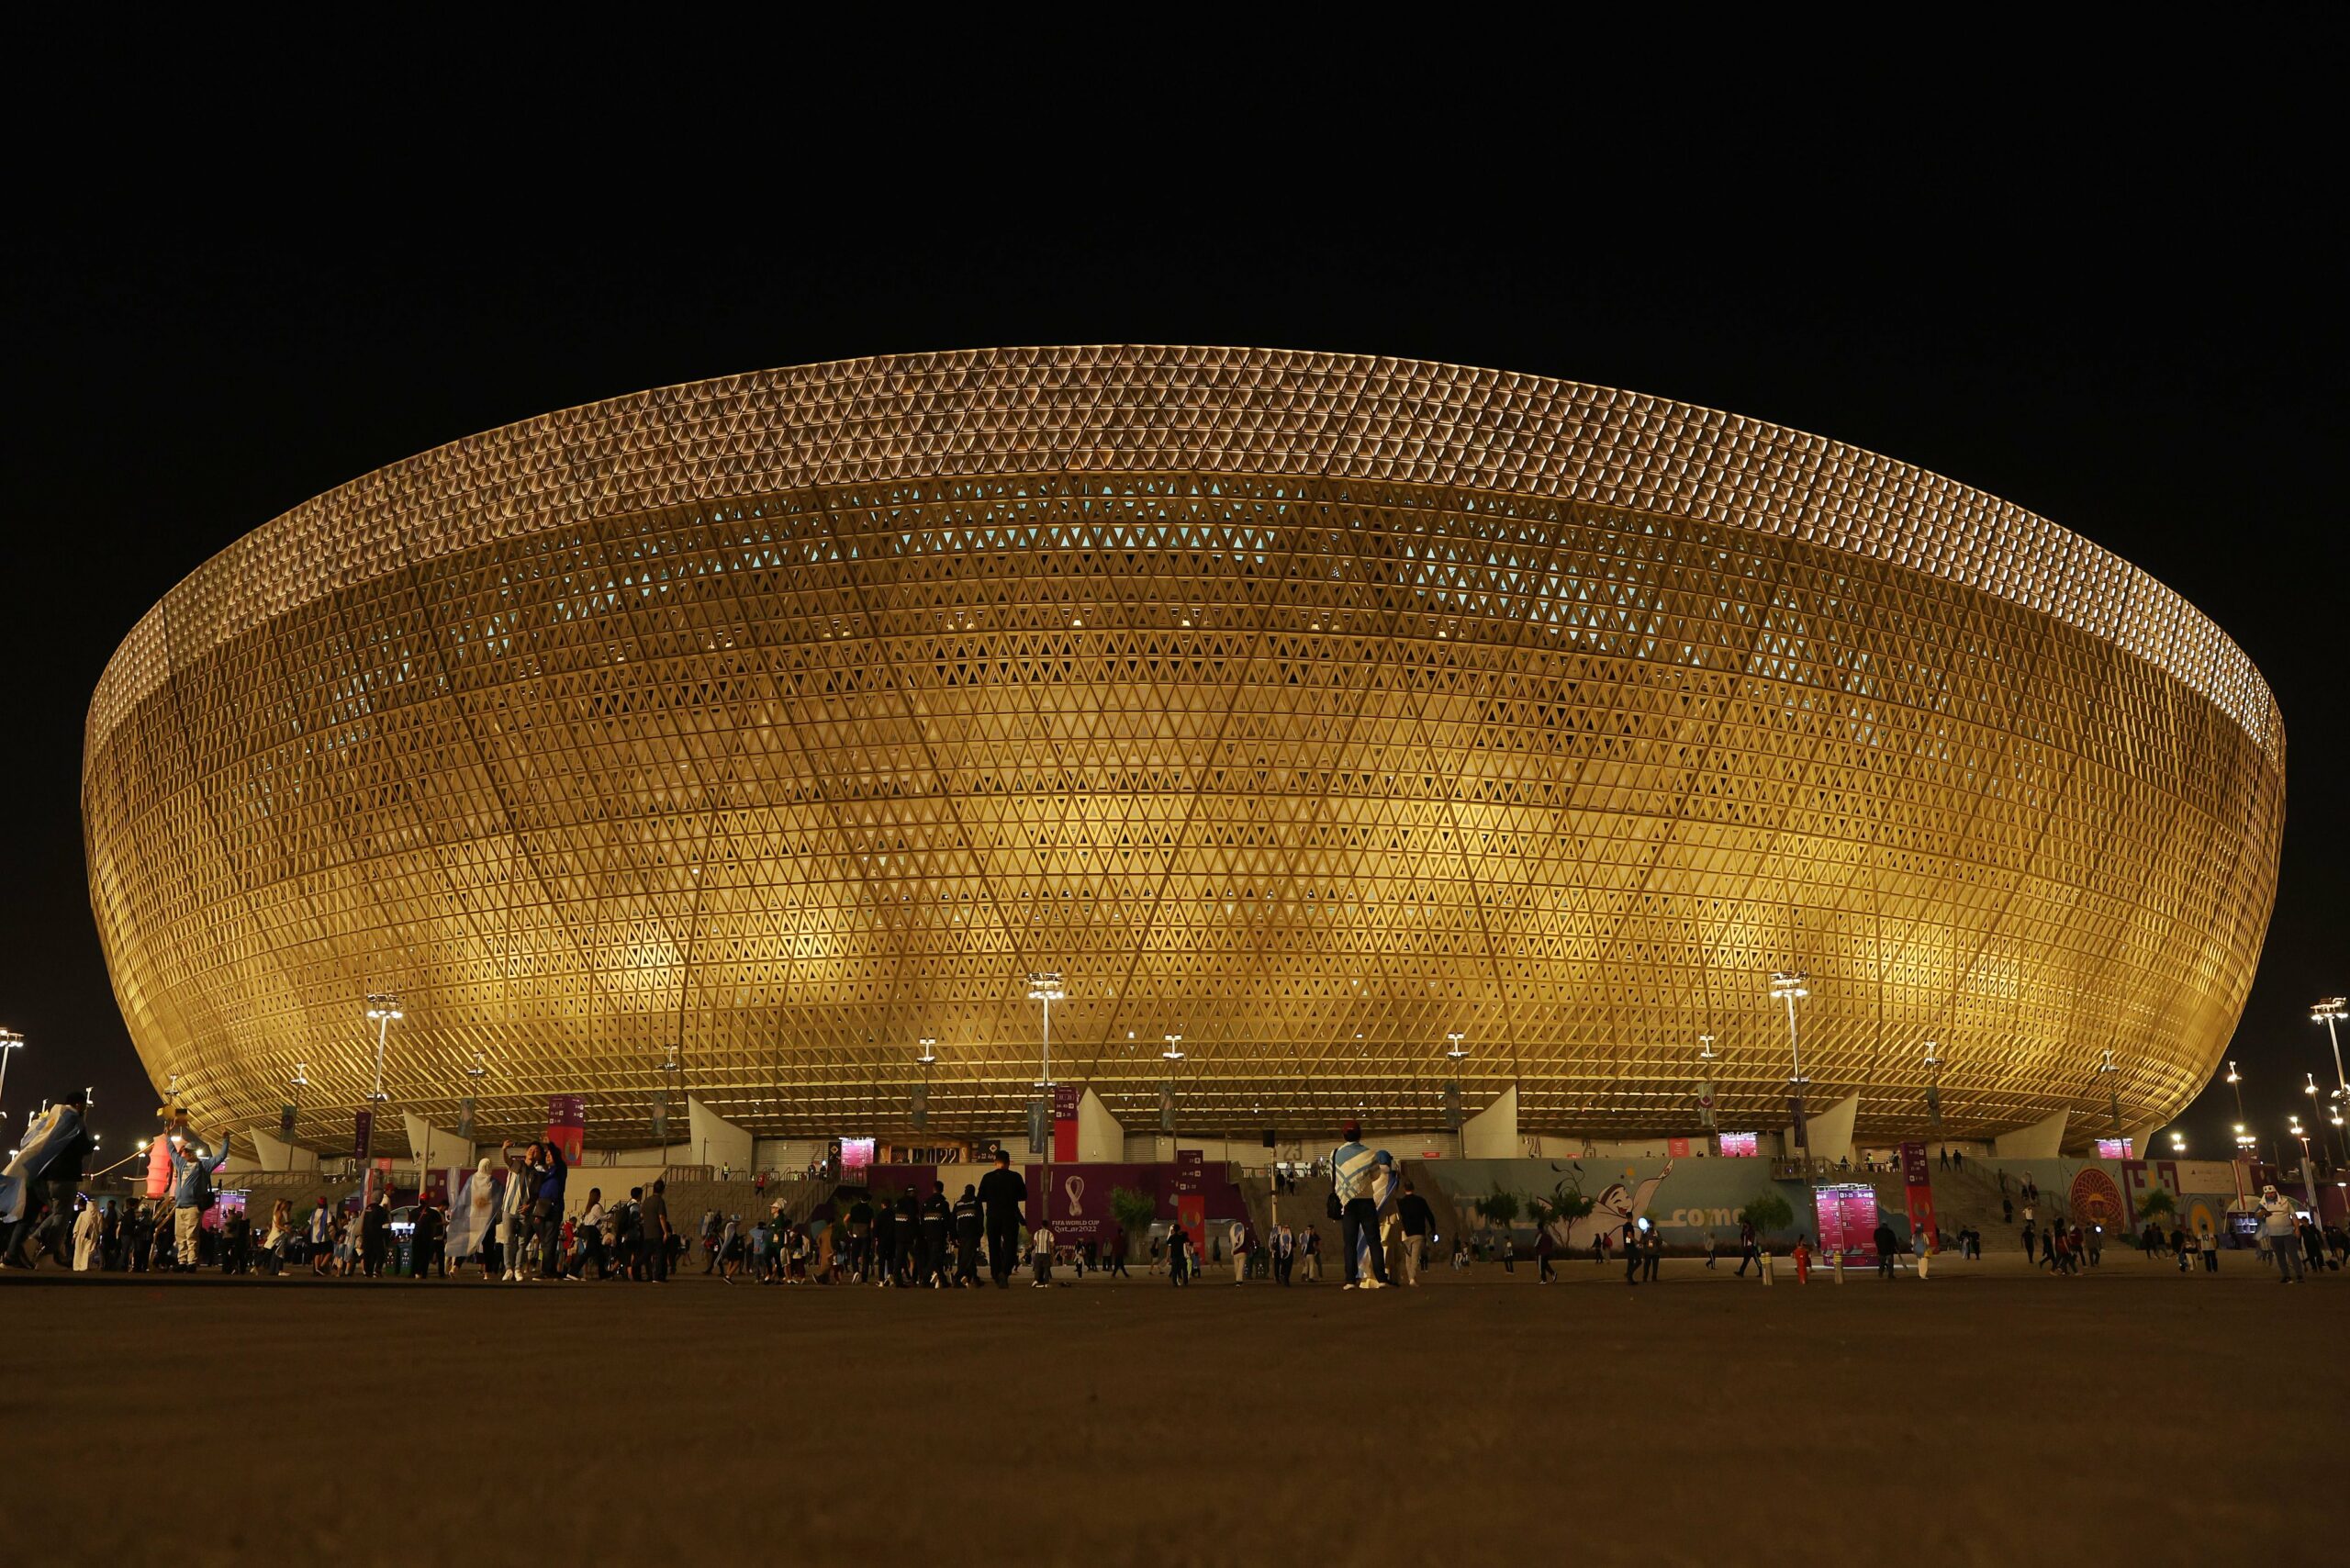 Estadio Lusail donde se albergará la final del Mundial Qatar 2022 entre Francia y Croacia. Foto: Twitter @FIFAWorldCup.